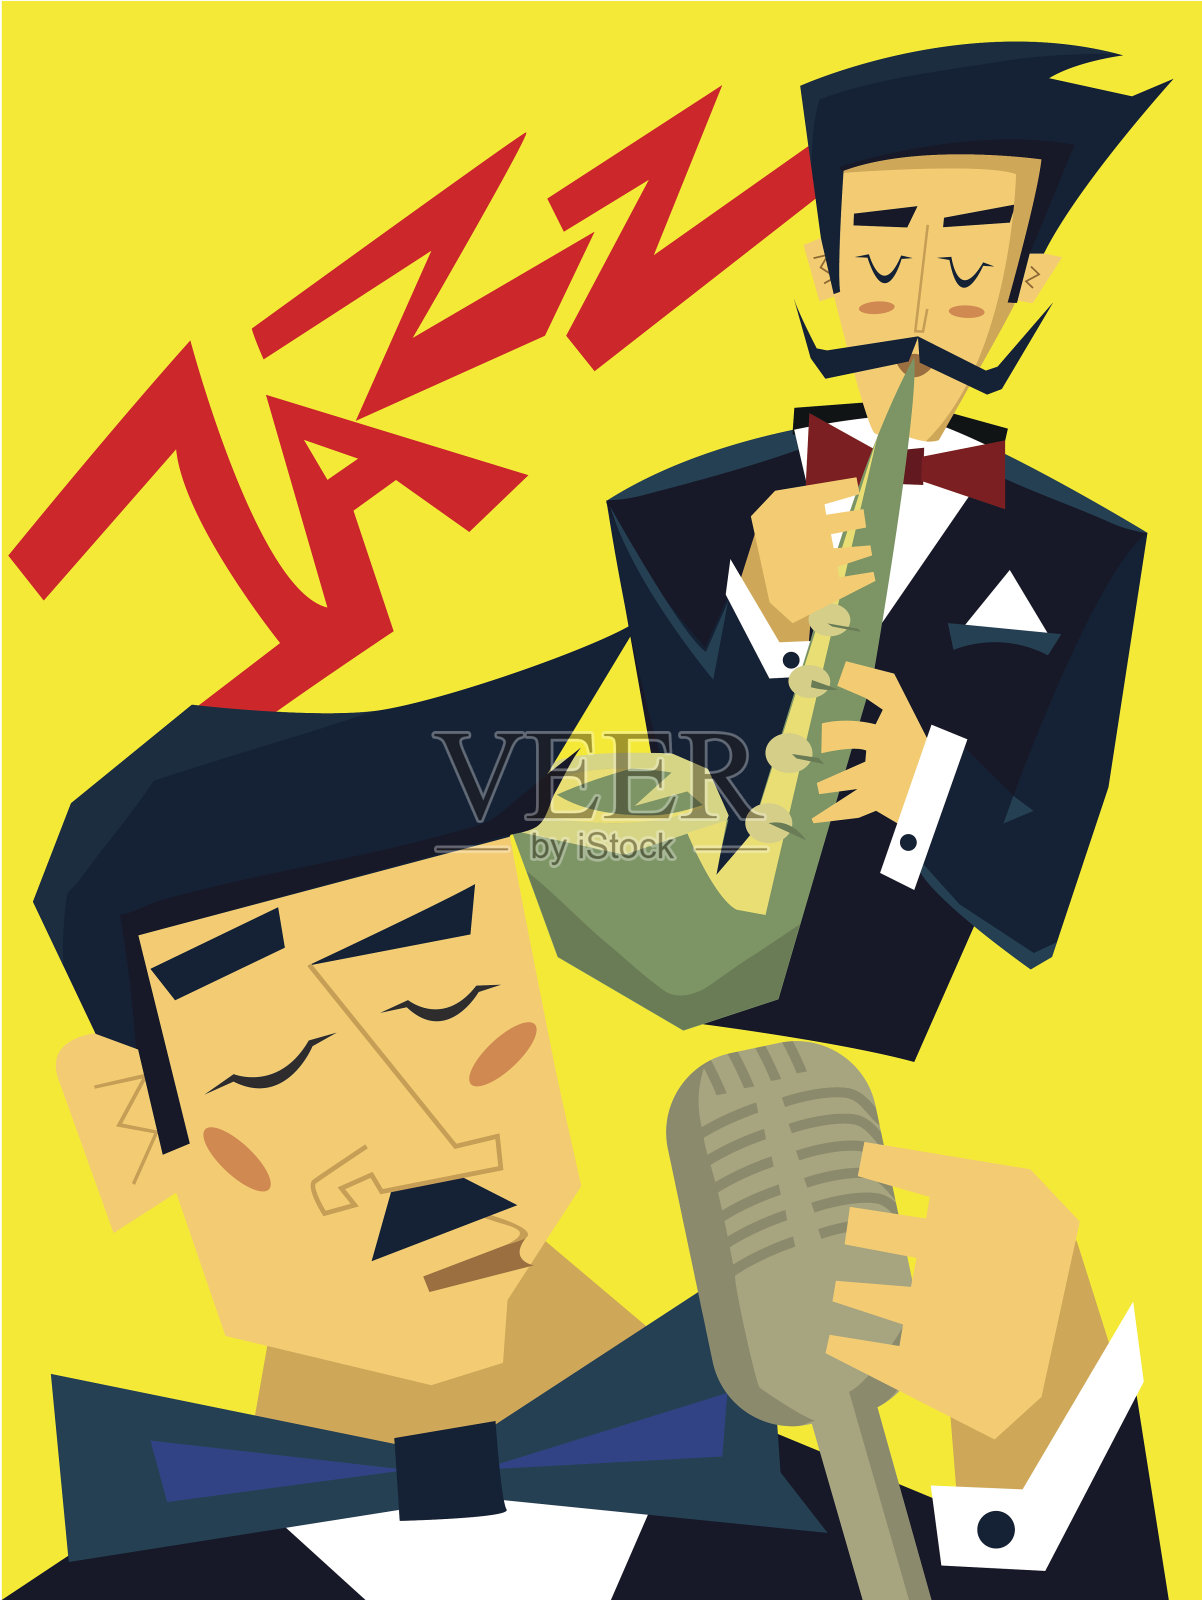 爵士音乐会海报模板。男人吹萨克斯管，歌手对着麦克风唱歌。矢量插图。设计模板素材